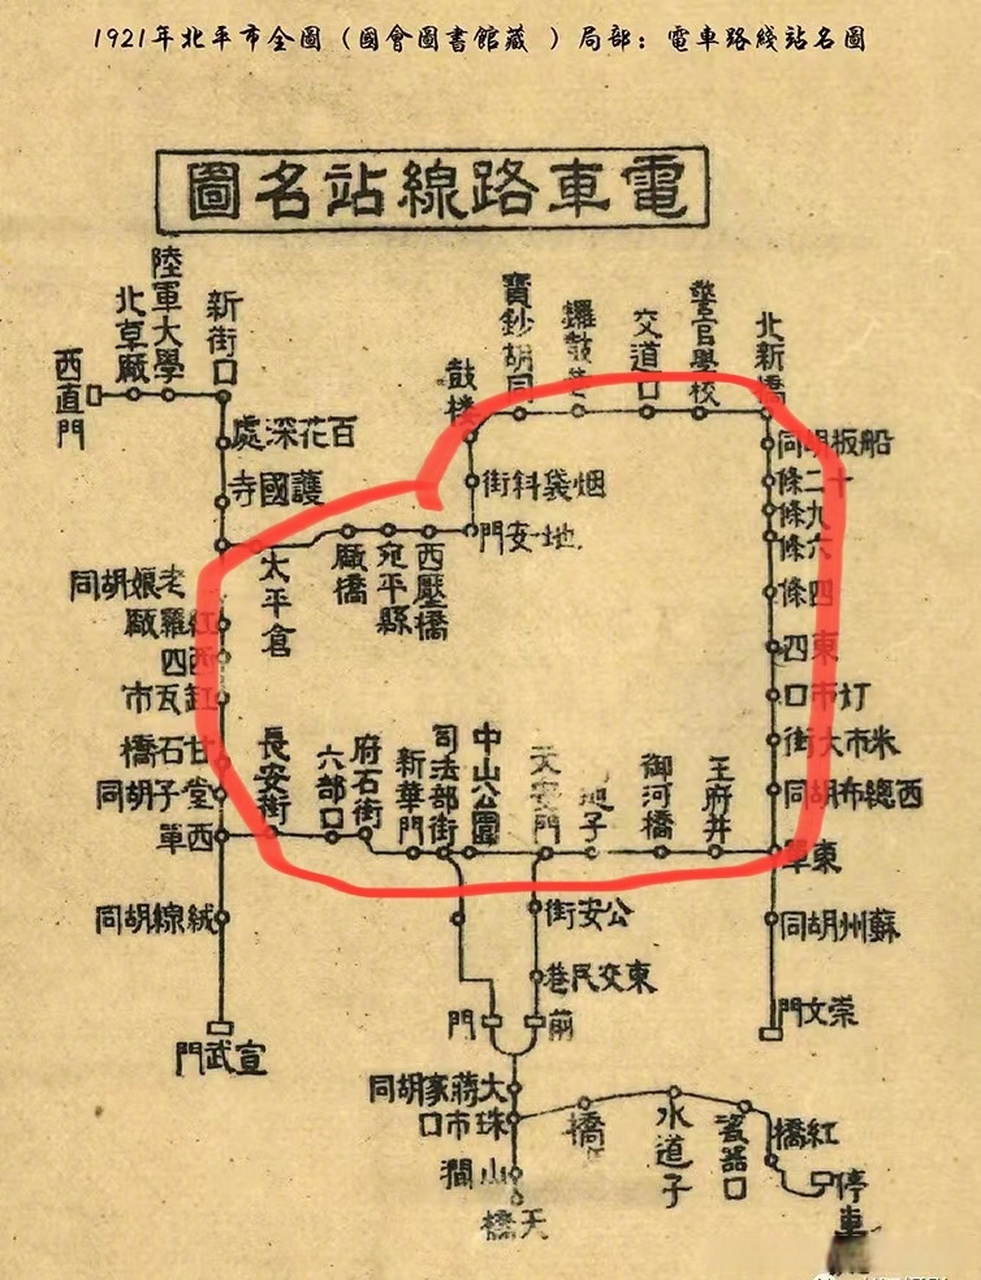 北京二环路线路图图片